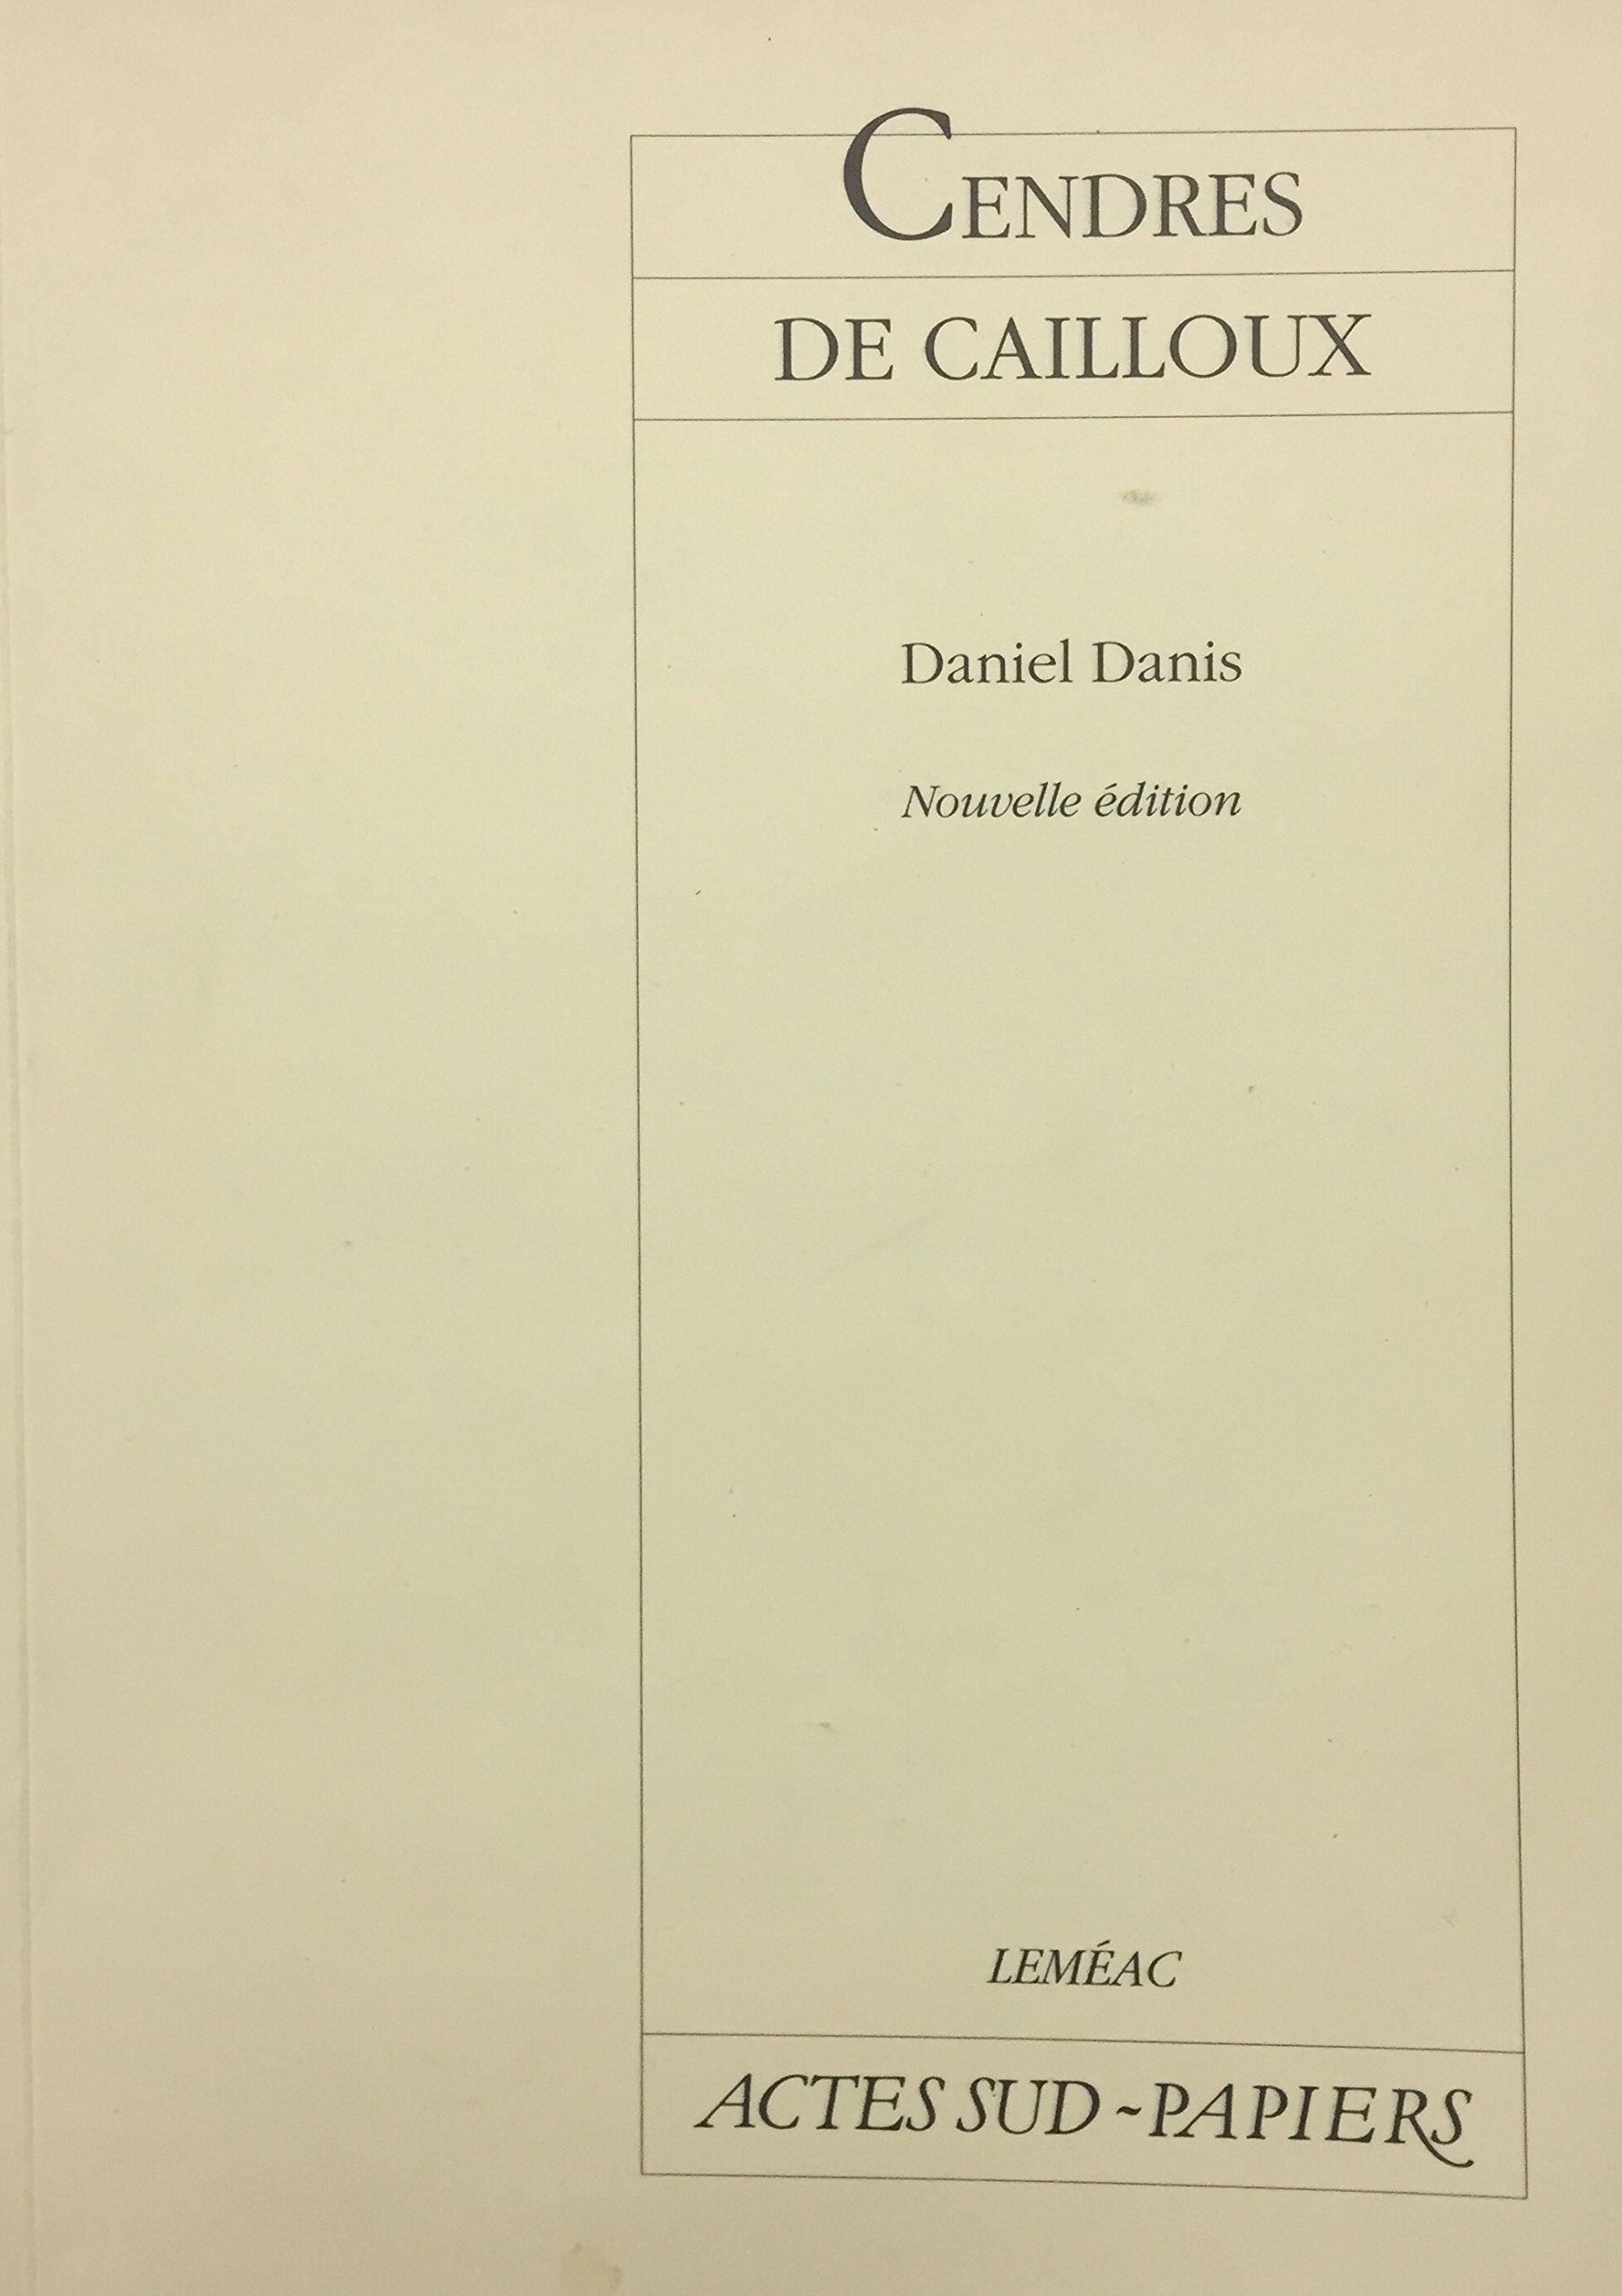 Livre ISBN 2760921182 Cendres de cailloux (Daniel Danis)